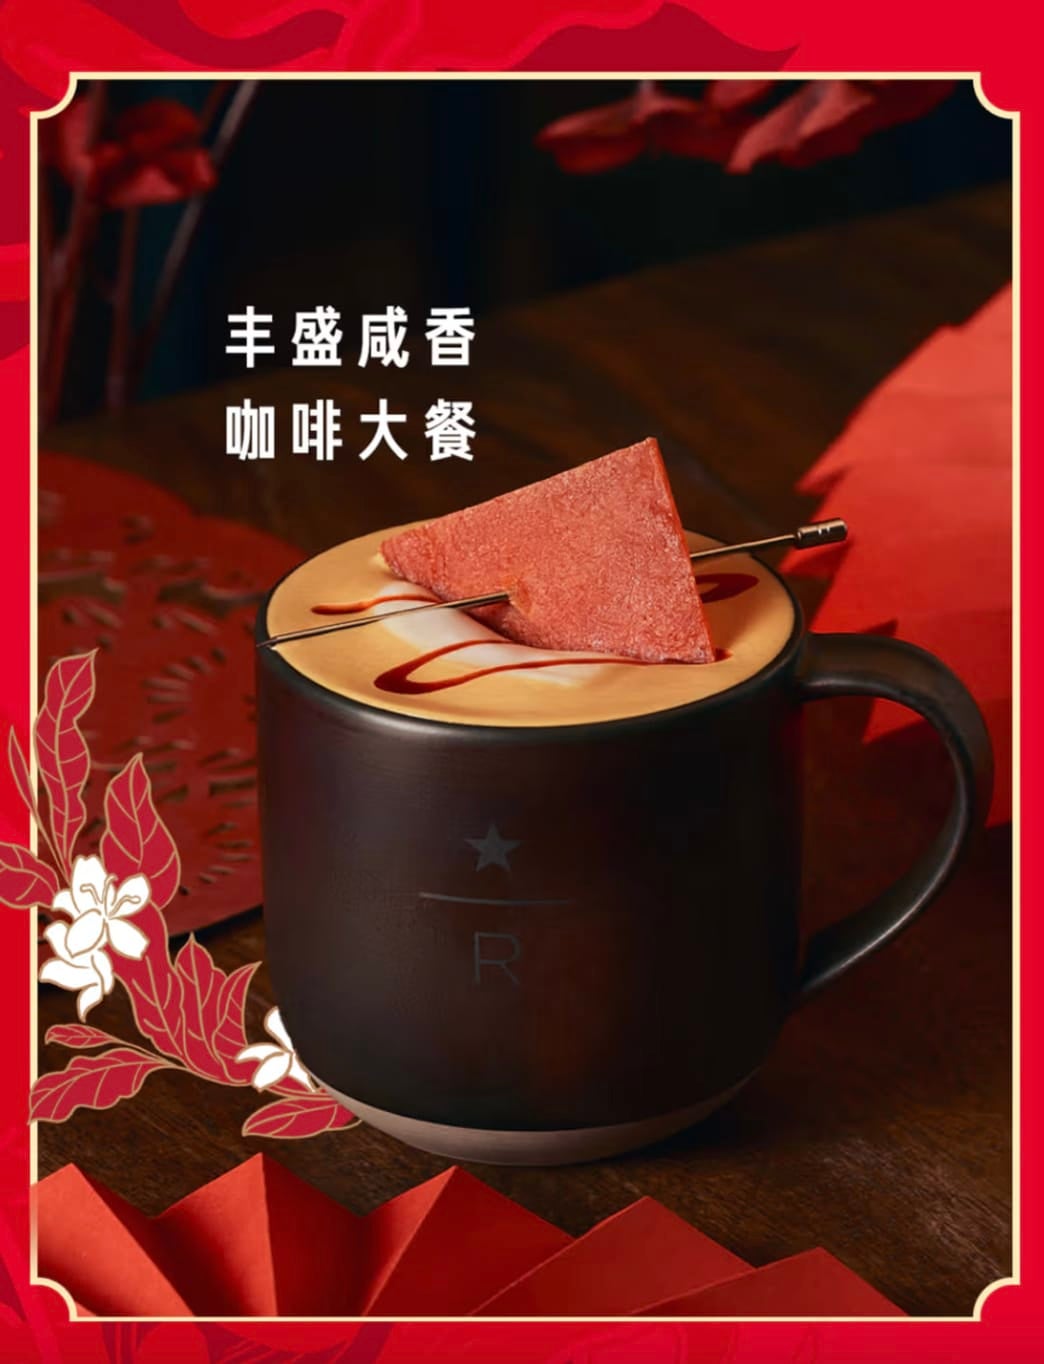 กาแฟลาเต้หมู Starbucks จีน